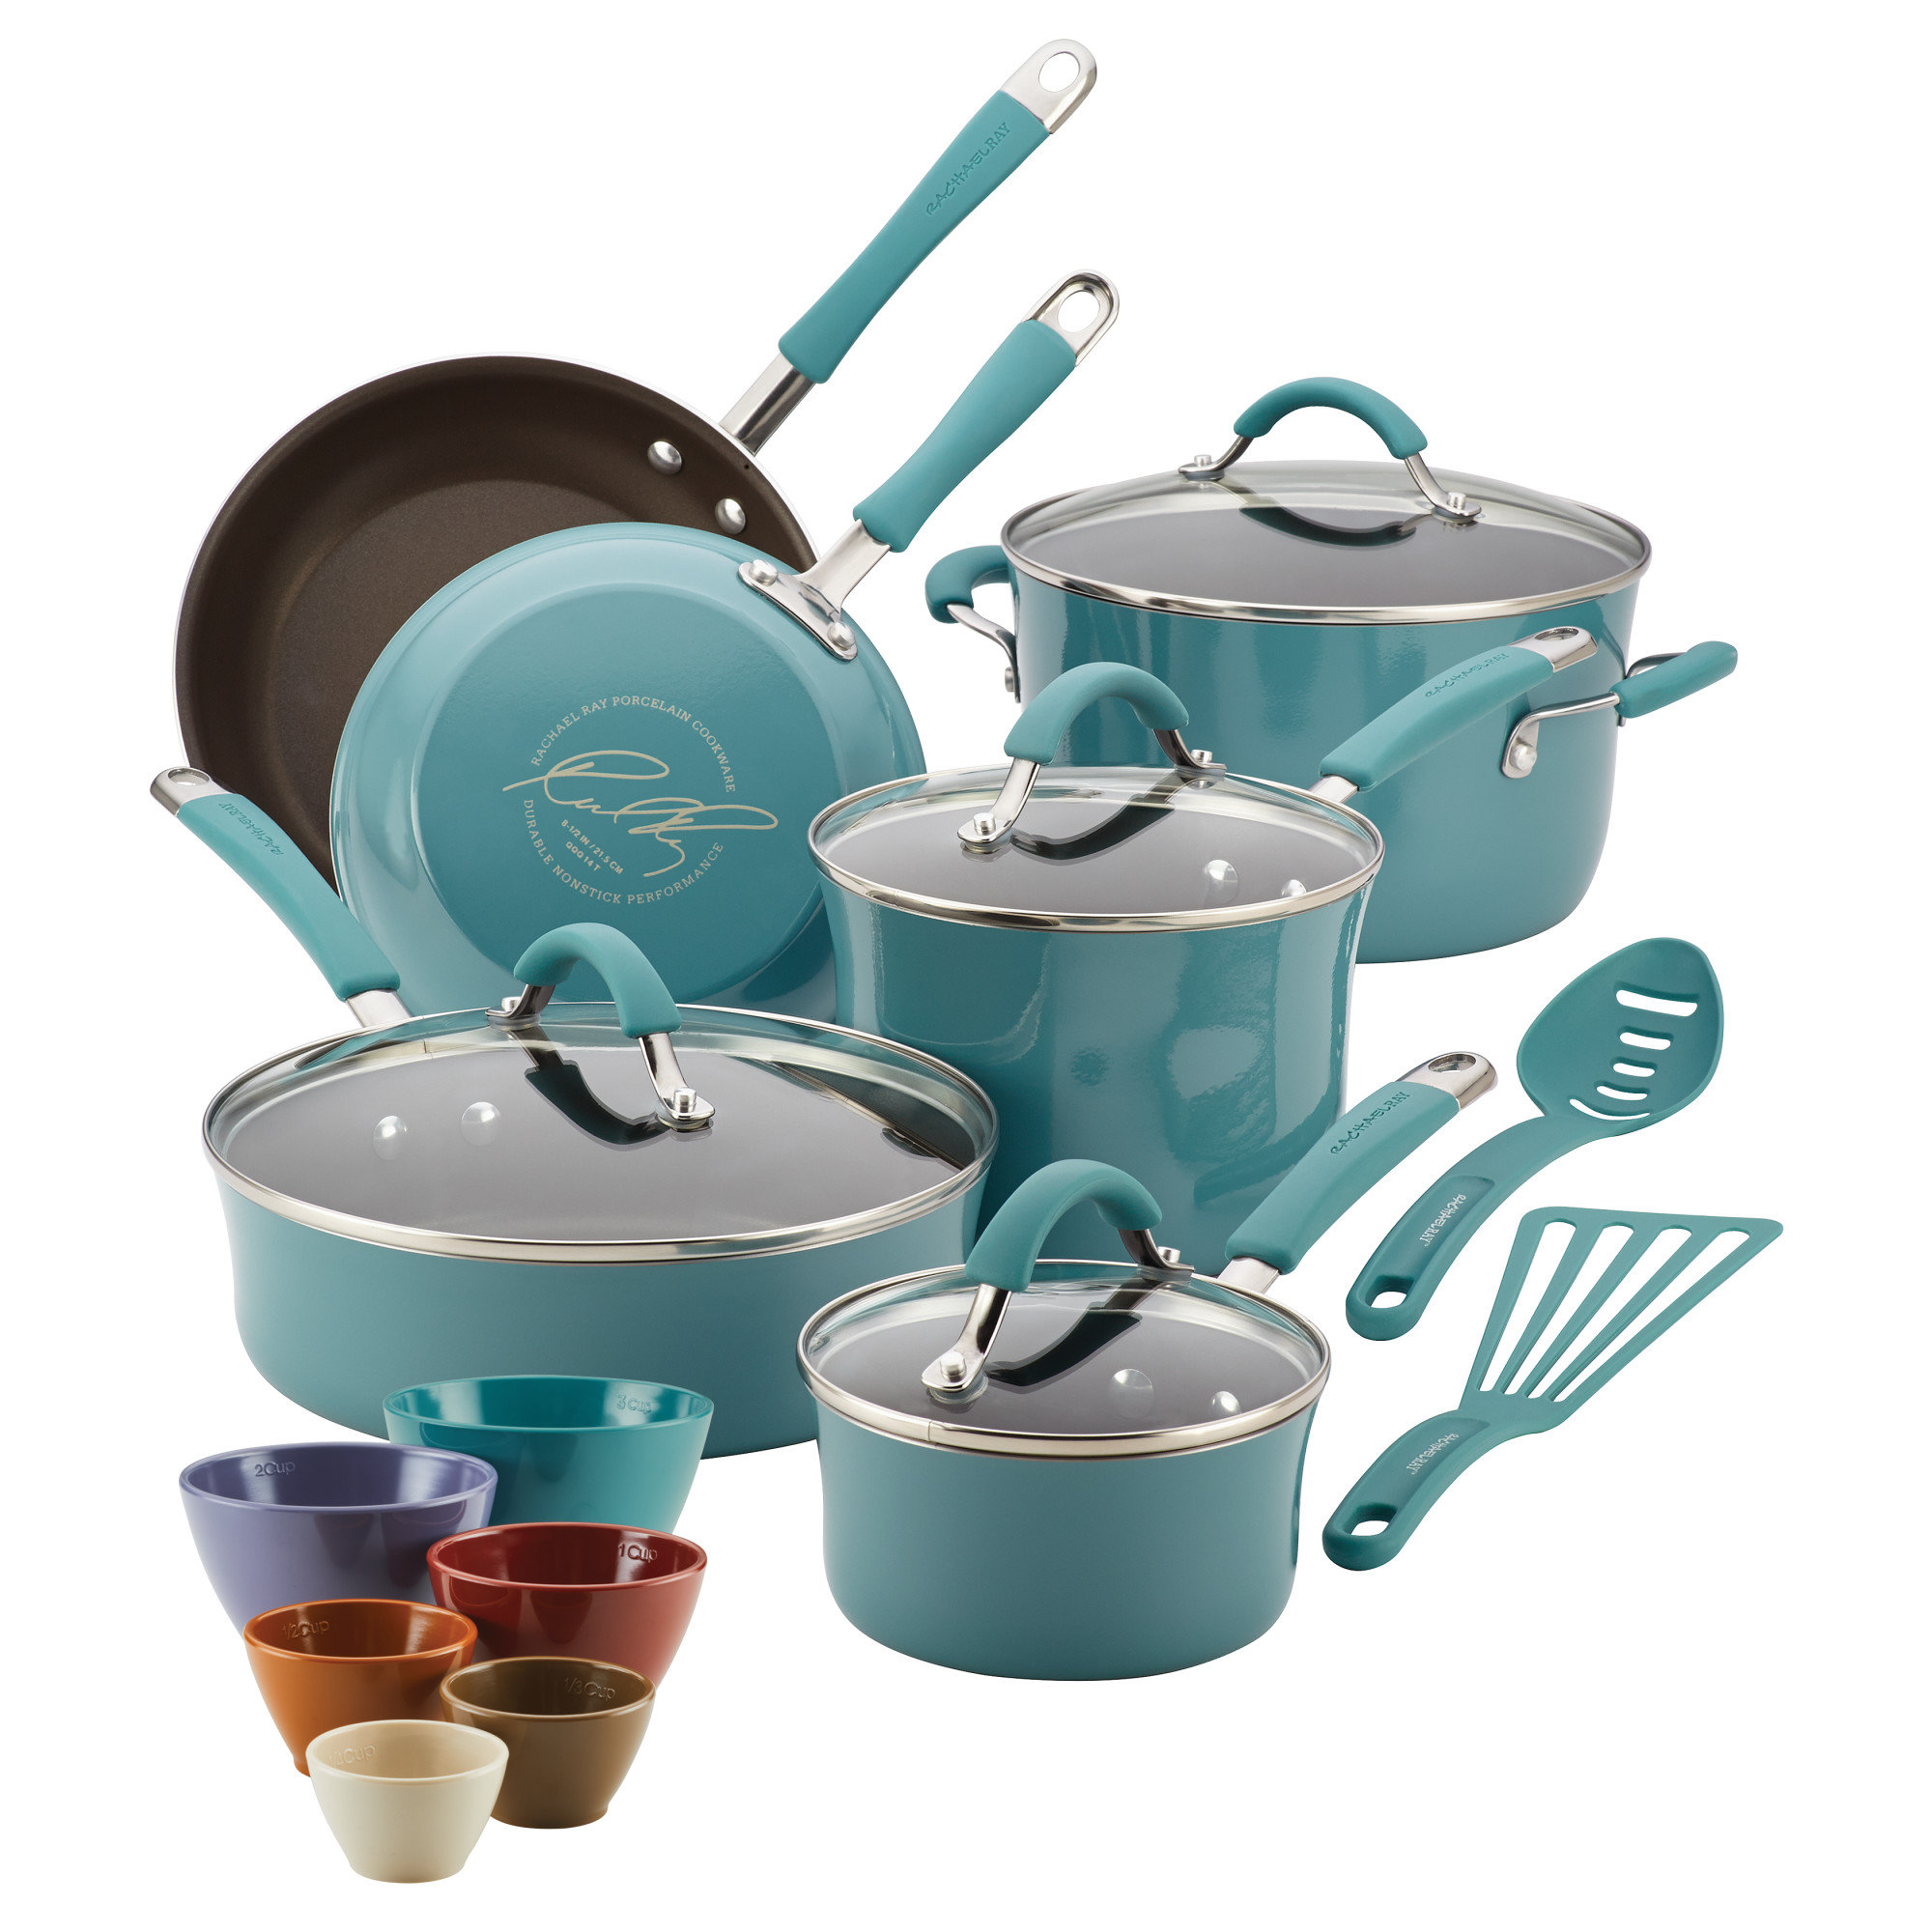 https://assets.wfcdn.com/im/67311981/compr-r85/1950/195015455/rachael-ray-cucina-nonstick-cookware-and-prep-bowl-set-18-piece.jpg